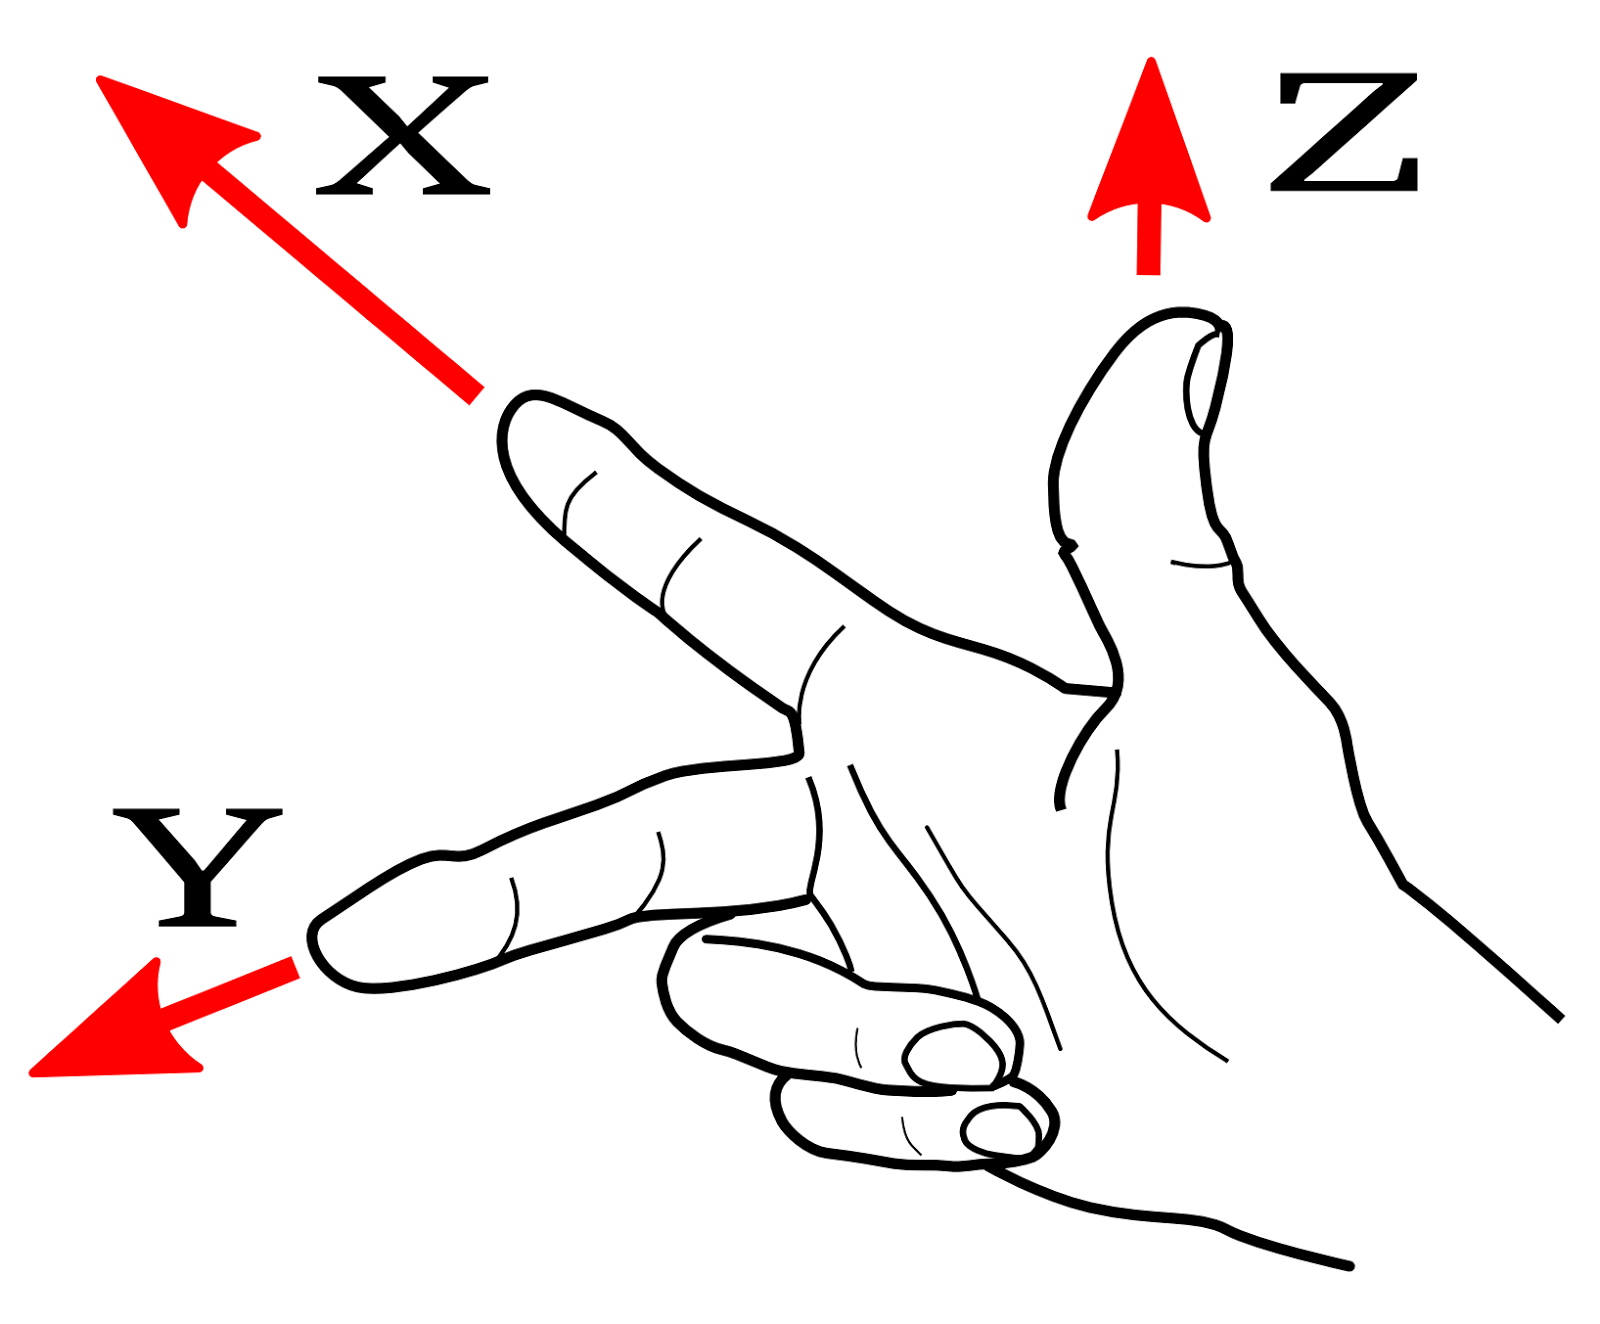 Правая левая тройка. Правая и левая тройка векторов на пальцах. Координат x y z на пальцах. Правило правой руки x y z. X Y Z на пальцах рук.